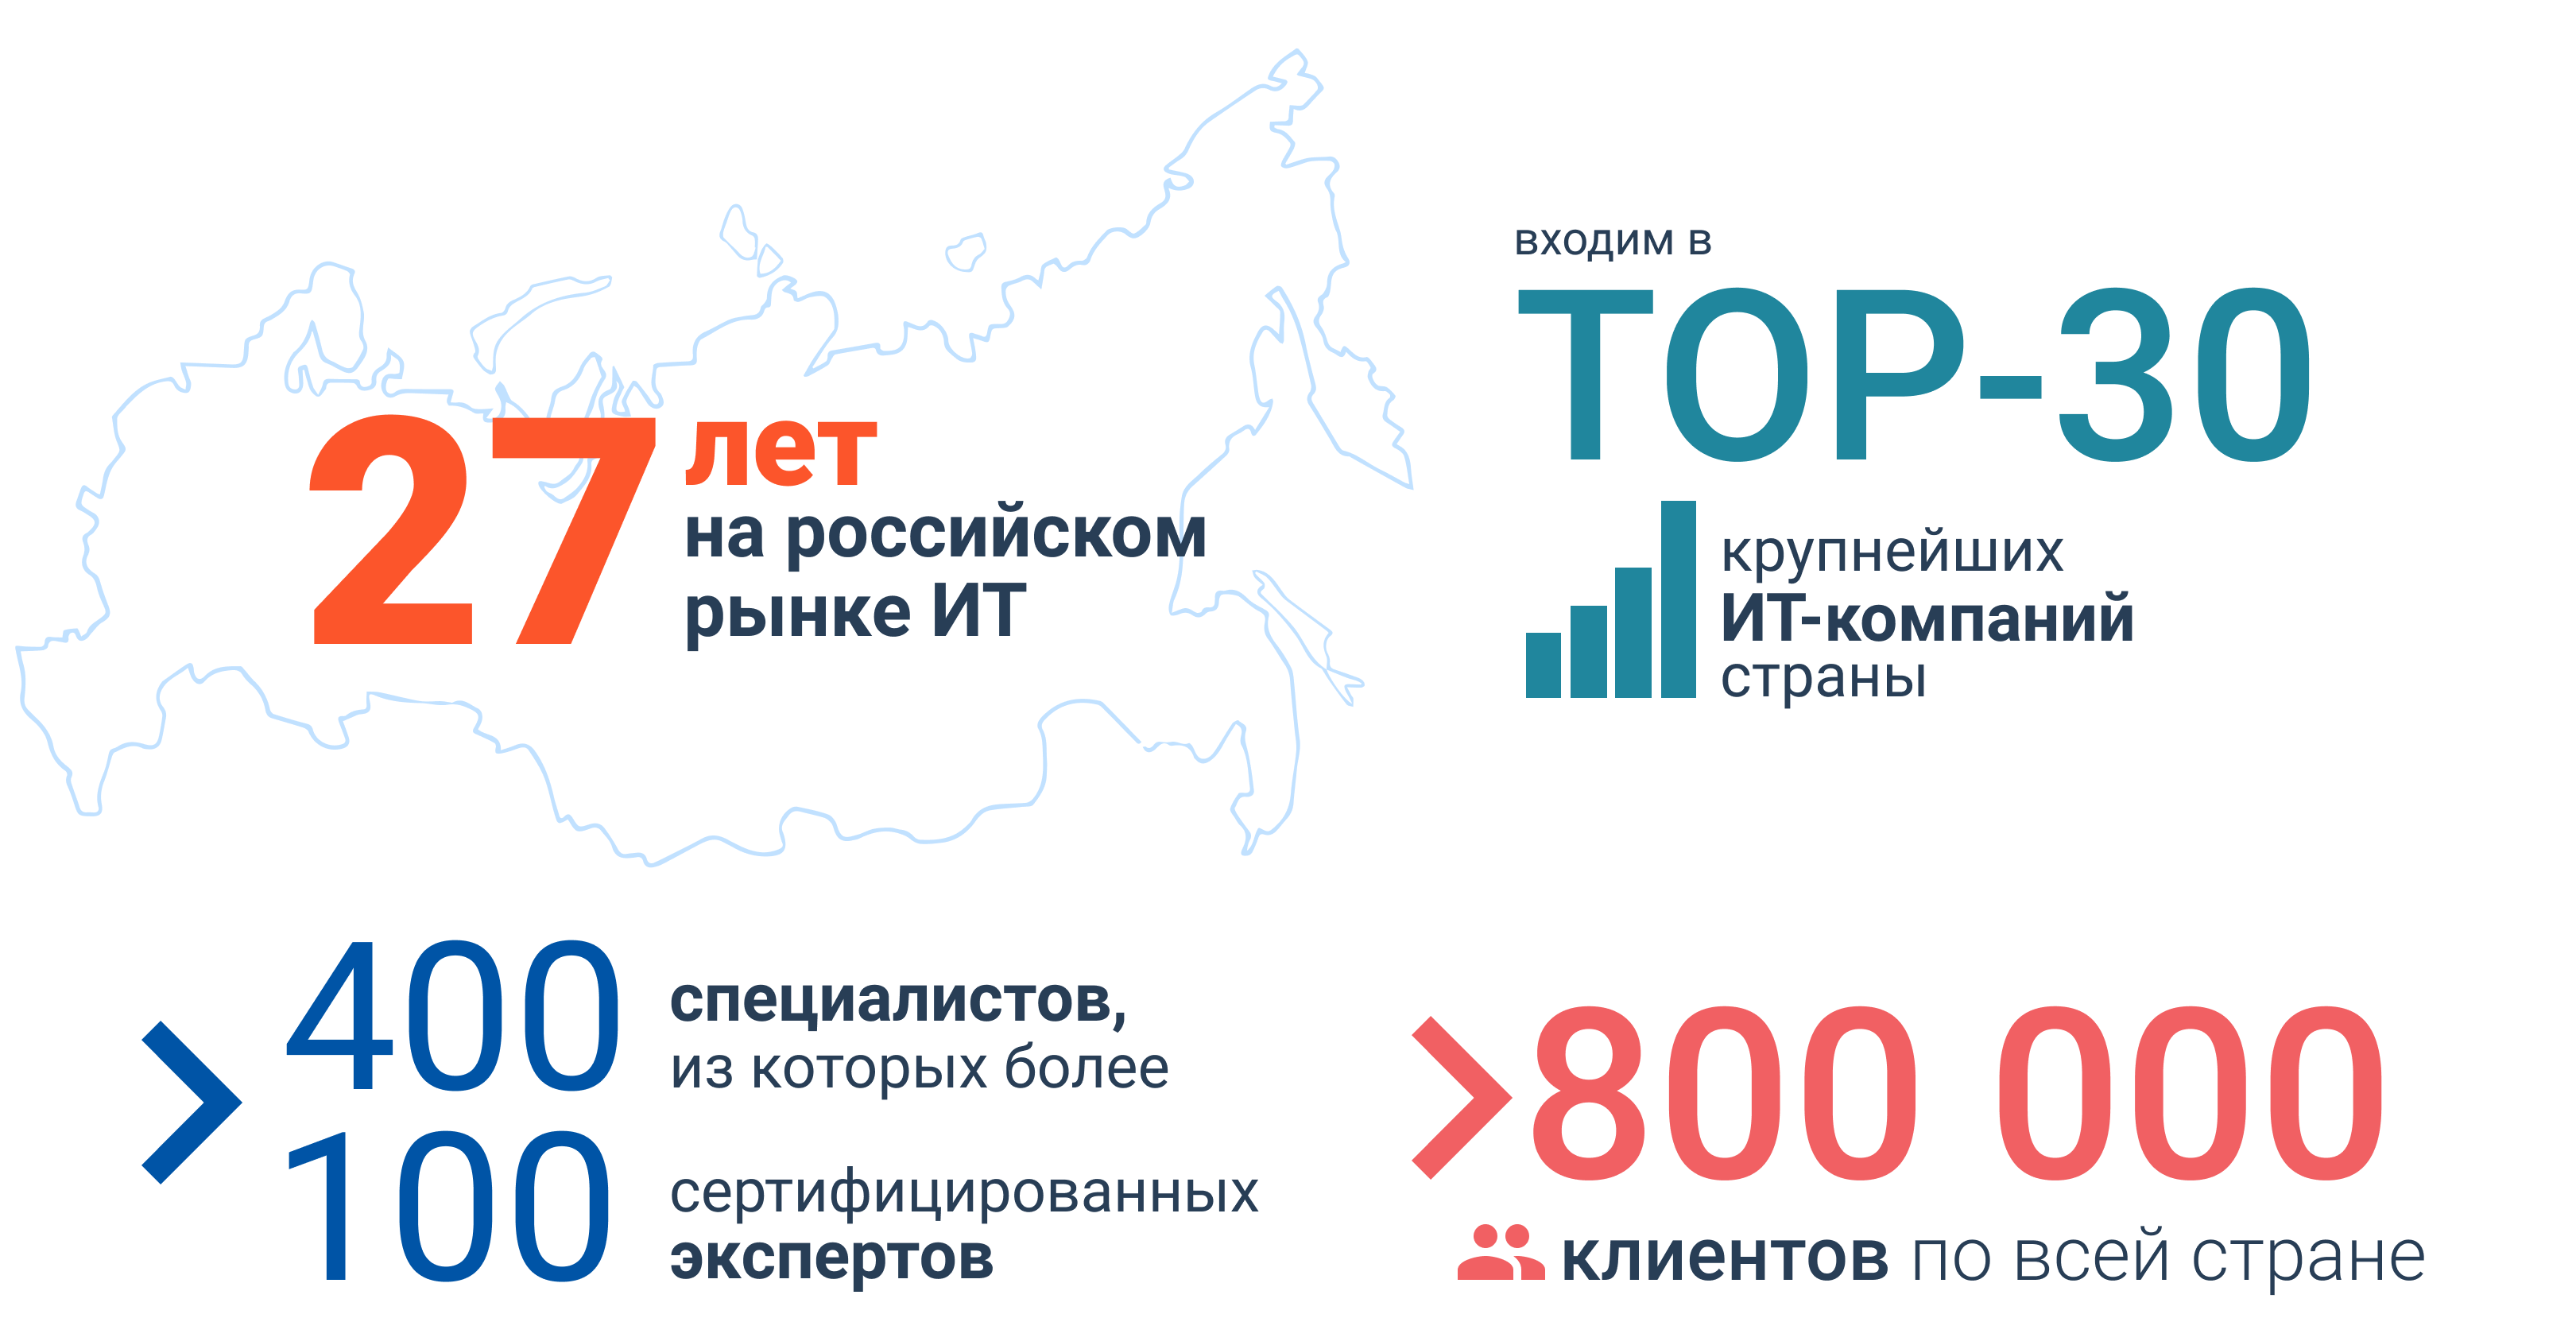 На протяжении многих лет Группа входит в число лидеров российского ИТ-рынка и поставщиков решений в вертикальные рынки